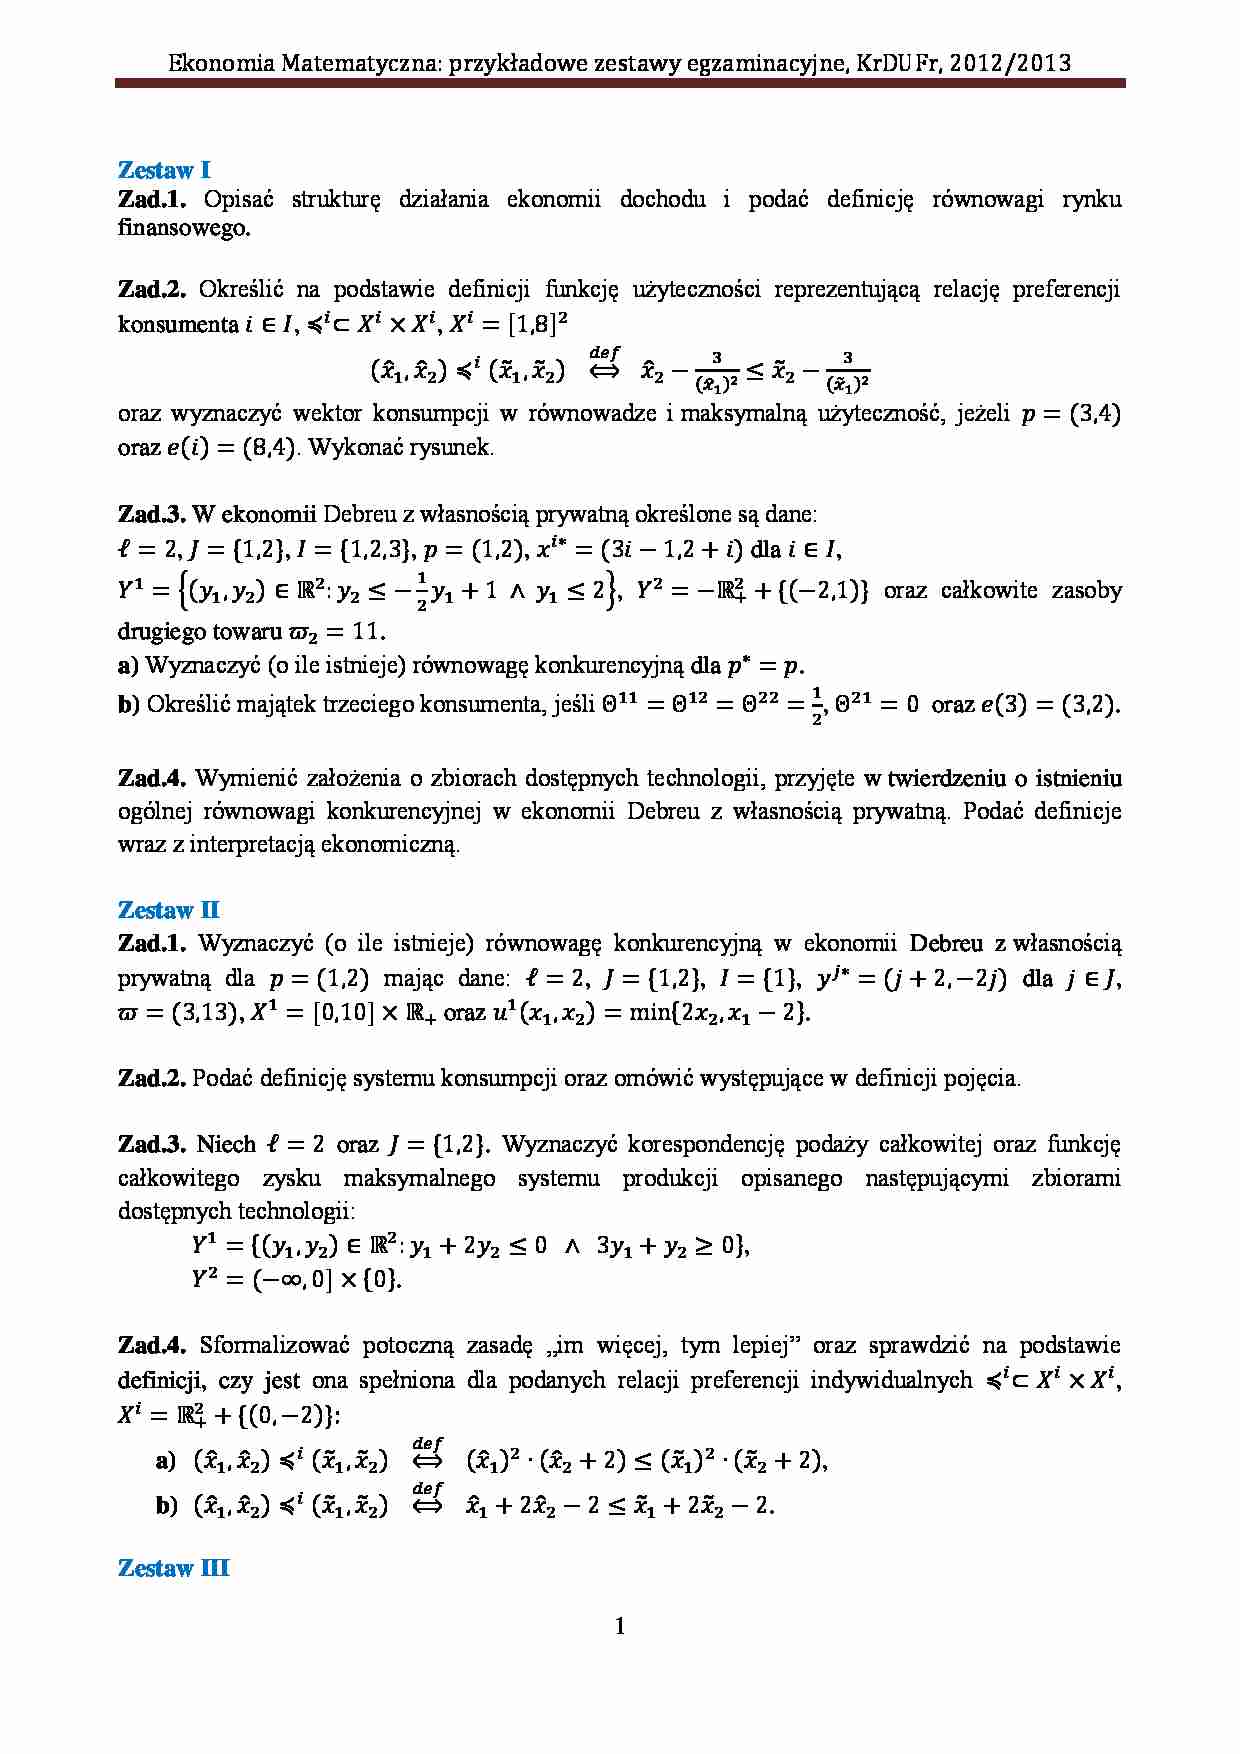 Ekonomia matematyczna - zadania. - strona 1